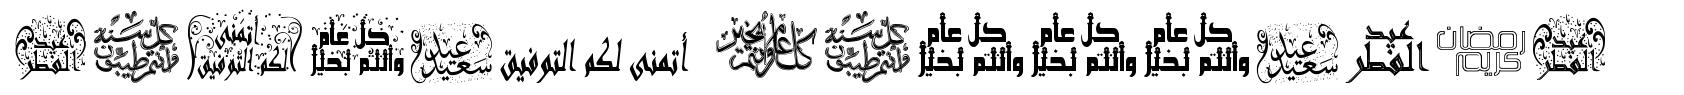 Arabic Greetings fonte